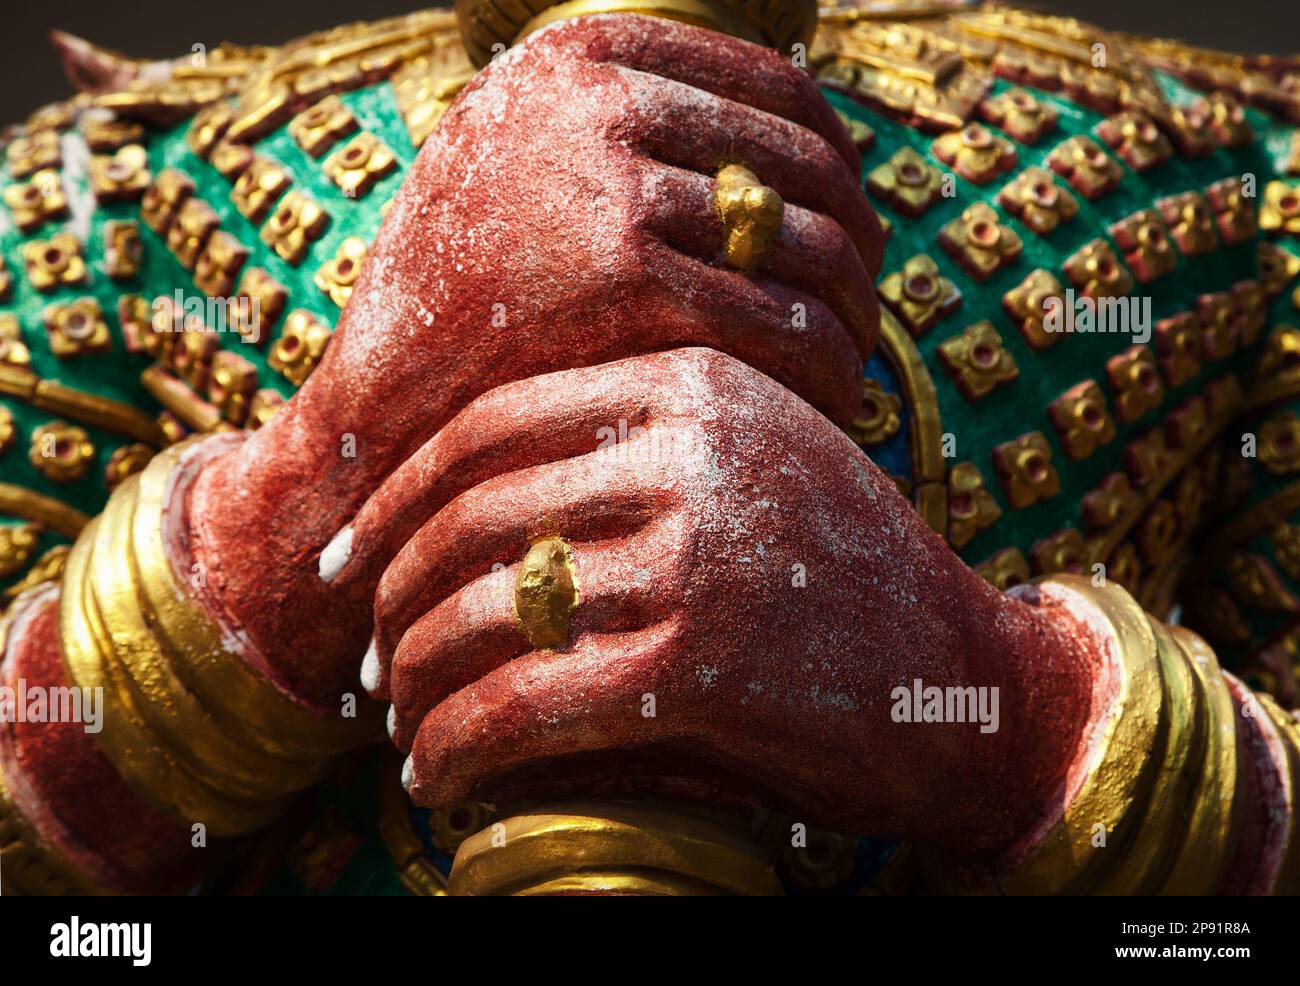 Yak démon gardien mains sculpture close-up dans un temple thaïlandais. Dieu asiatique statue colorée dans un lieu de culte Banque D'Images